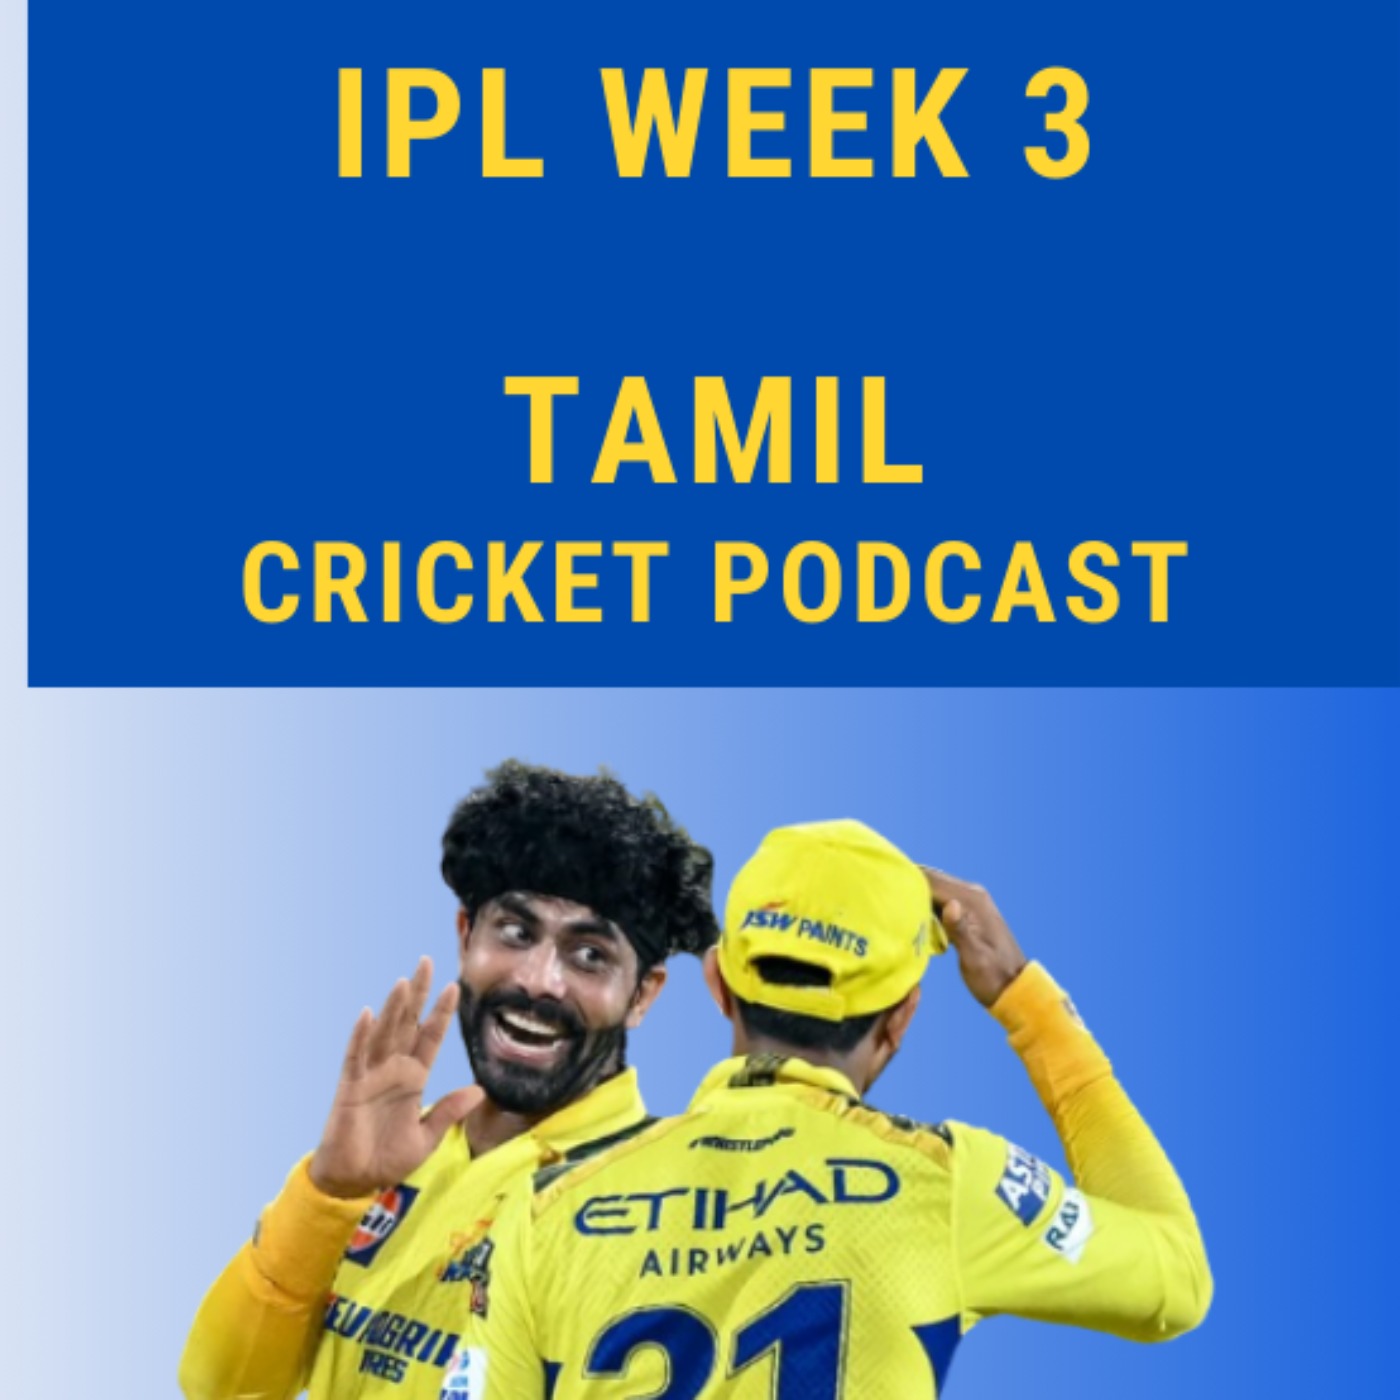 IPL Week 3 review - CSK beat KKR, Kohli anchor debate, MI and LSG win -  Episode 15